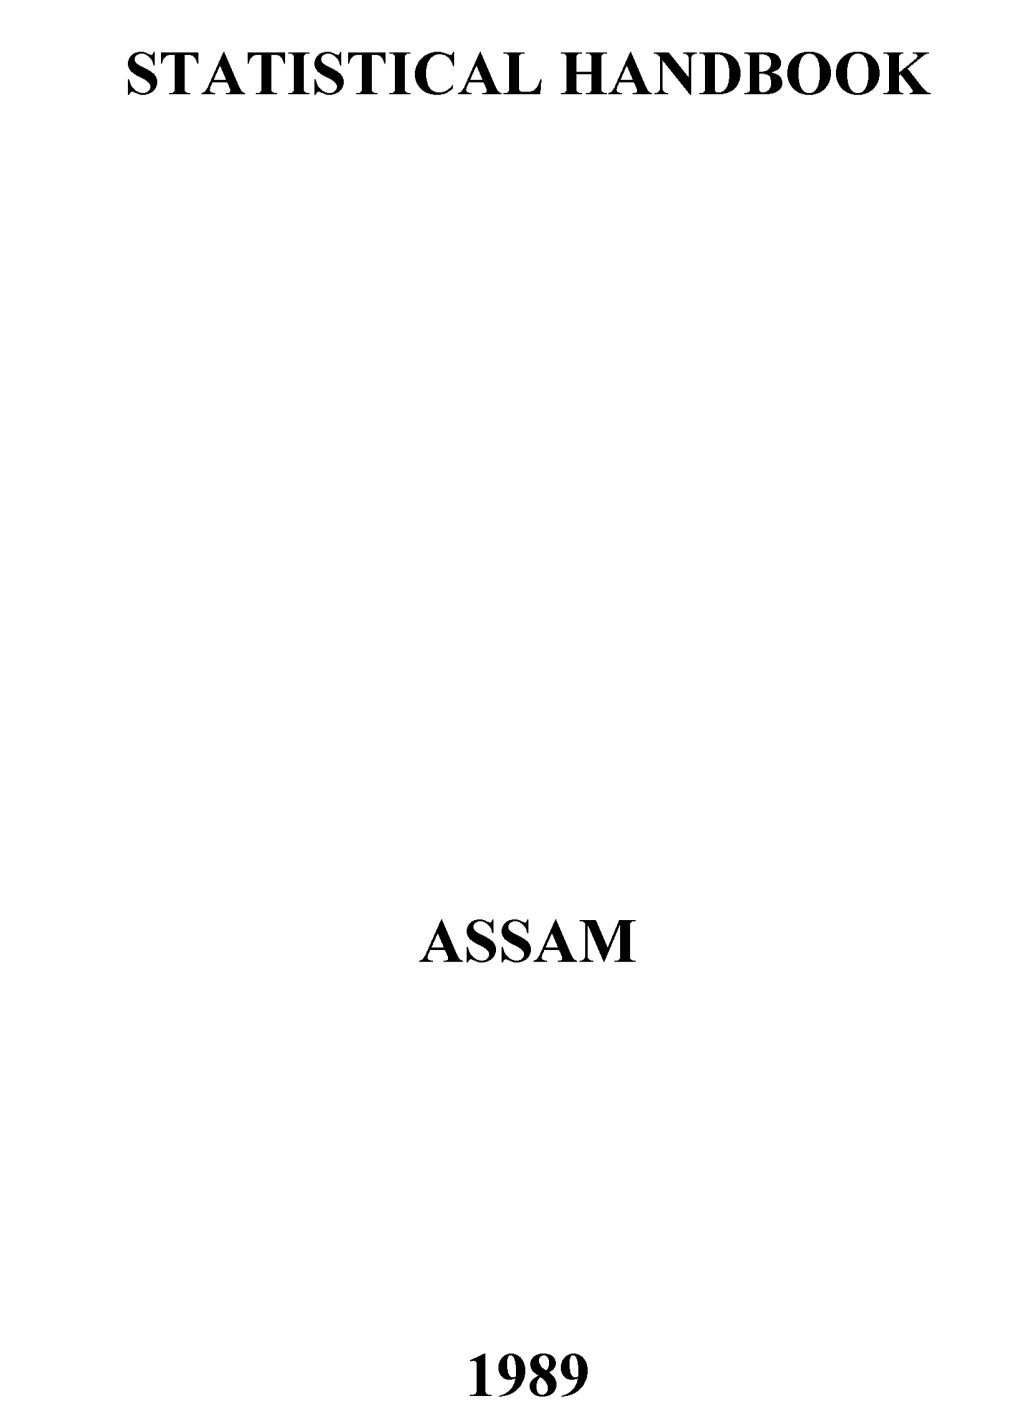 Statistical Handbook Assam 1989